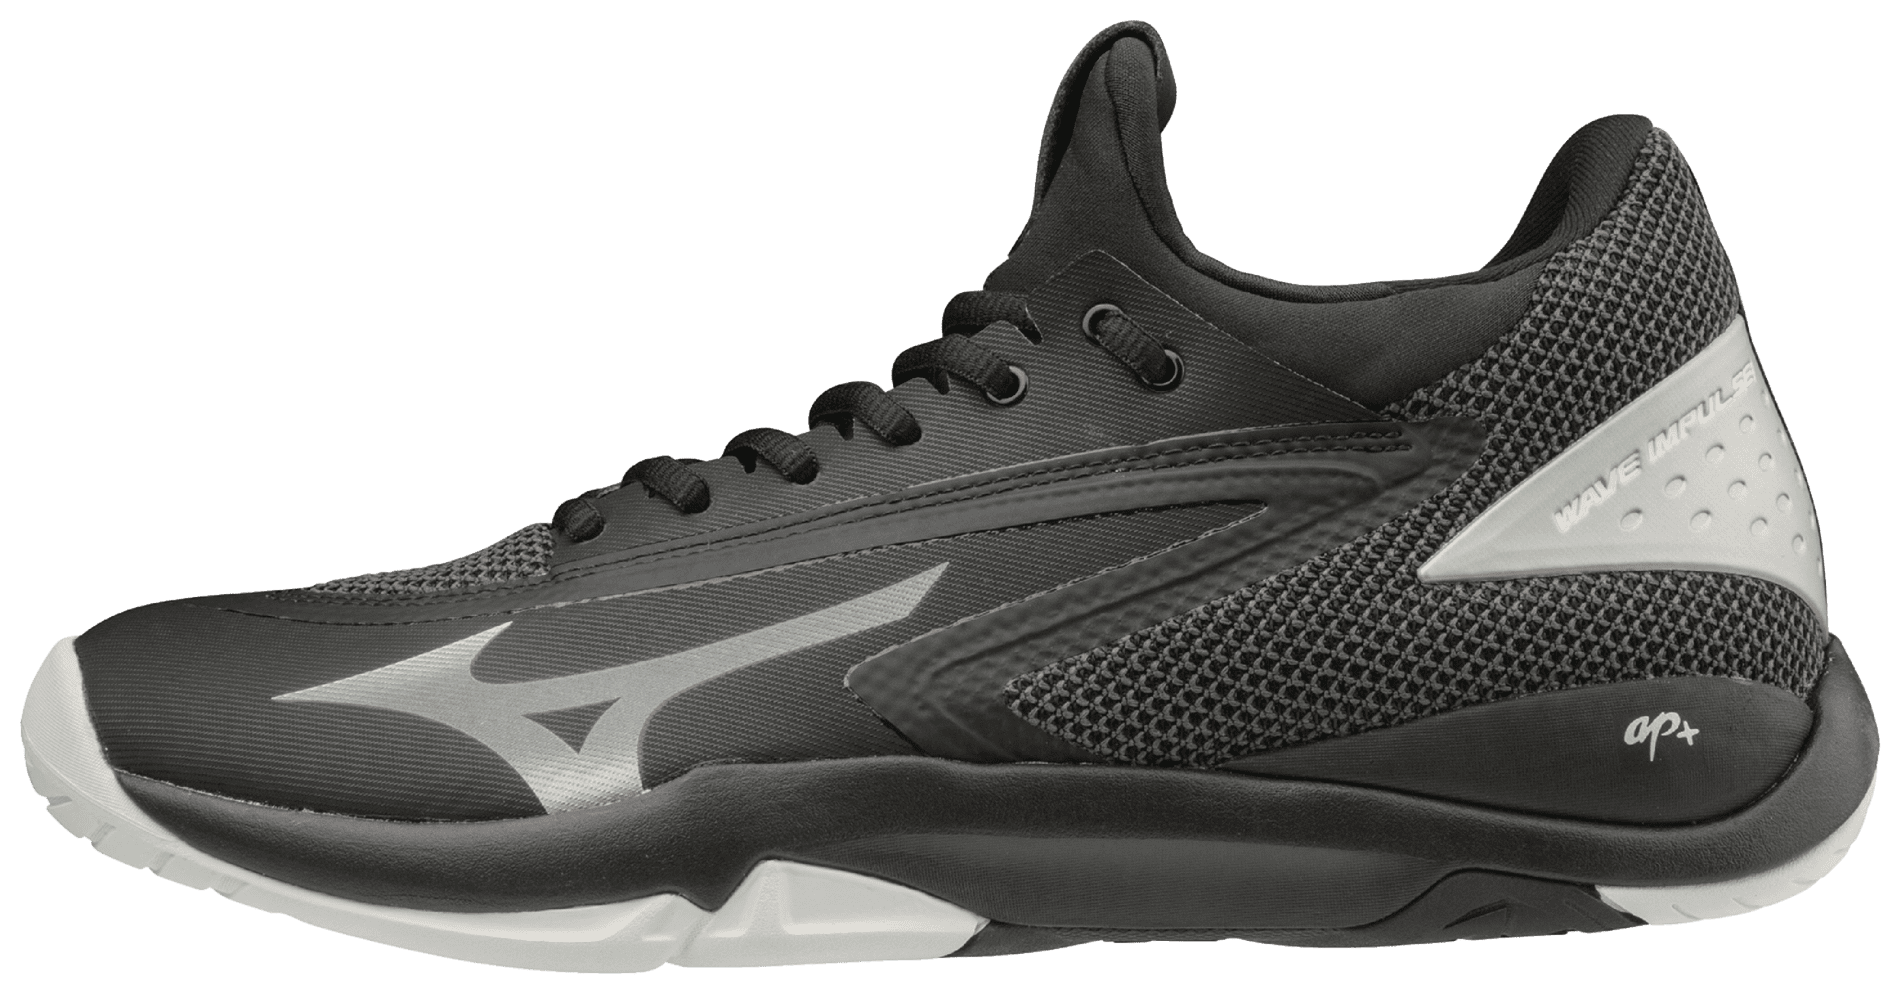 Black-silver Details about   Mizuno Men's Wave Impulse All Court Tennis Shoe  8.5 